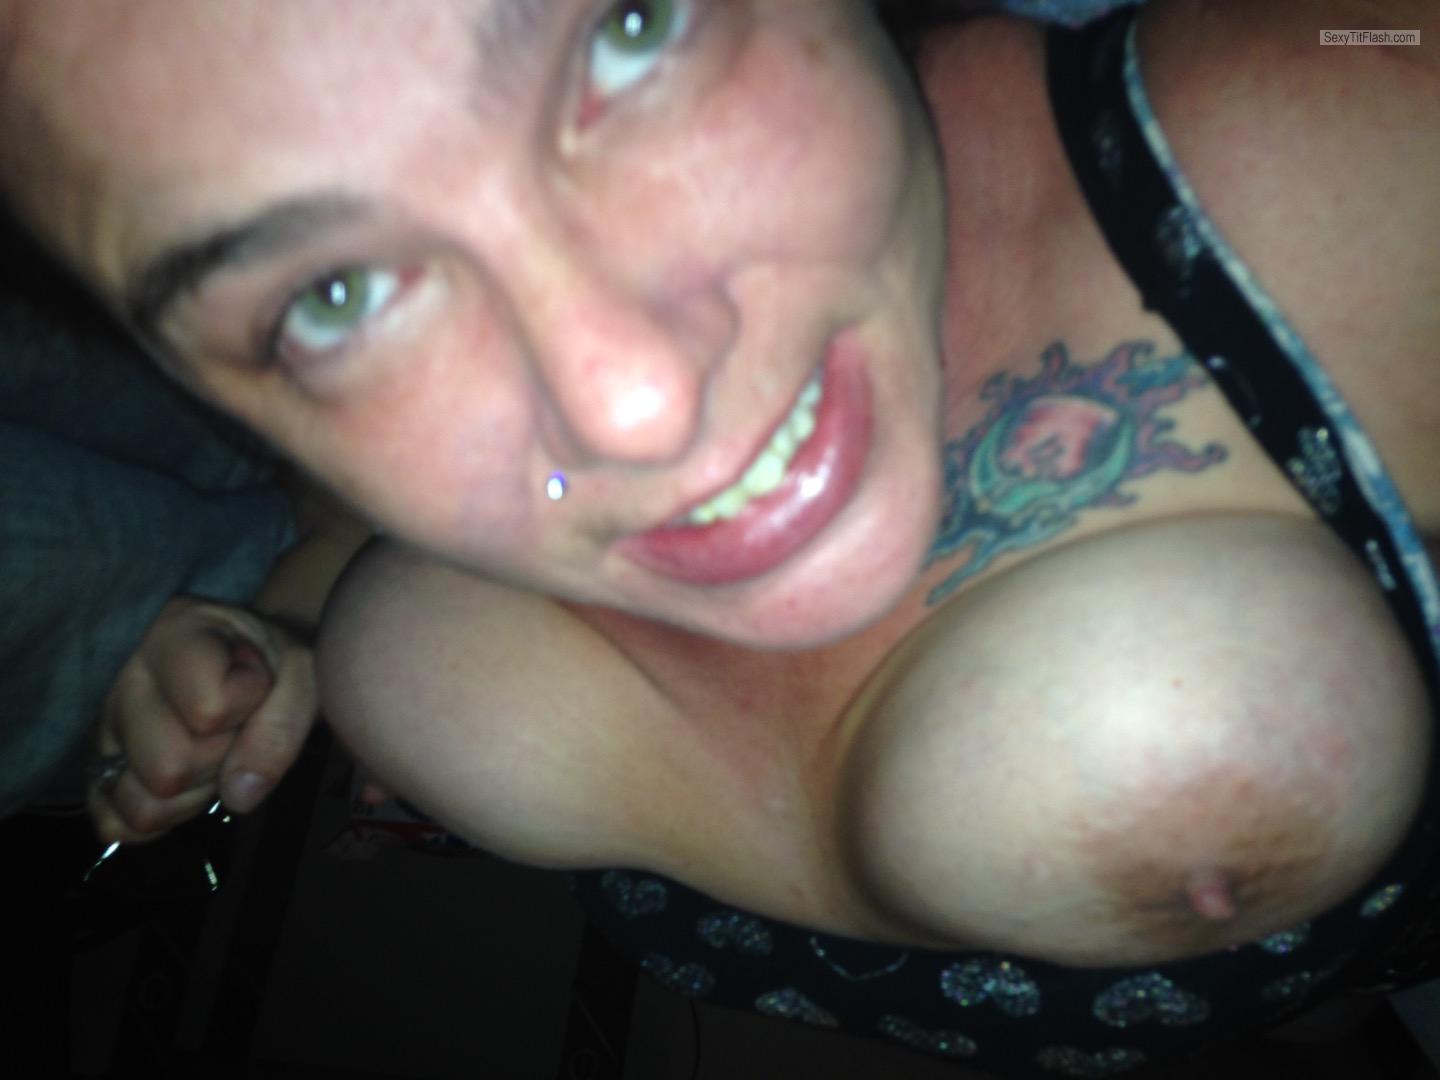 Mein Sehr grosser Busen Topless Selbstporträt von Joie